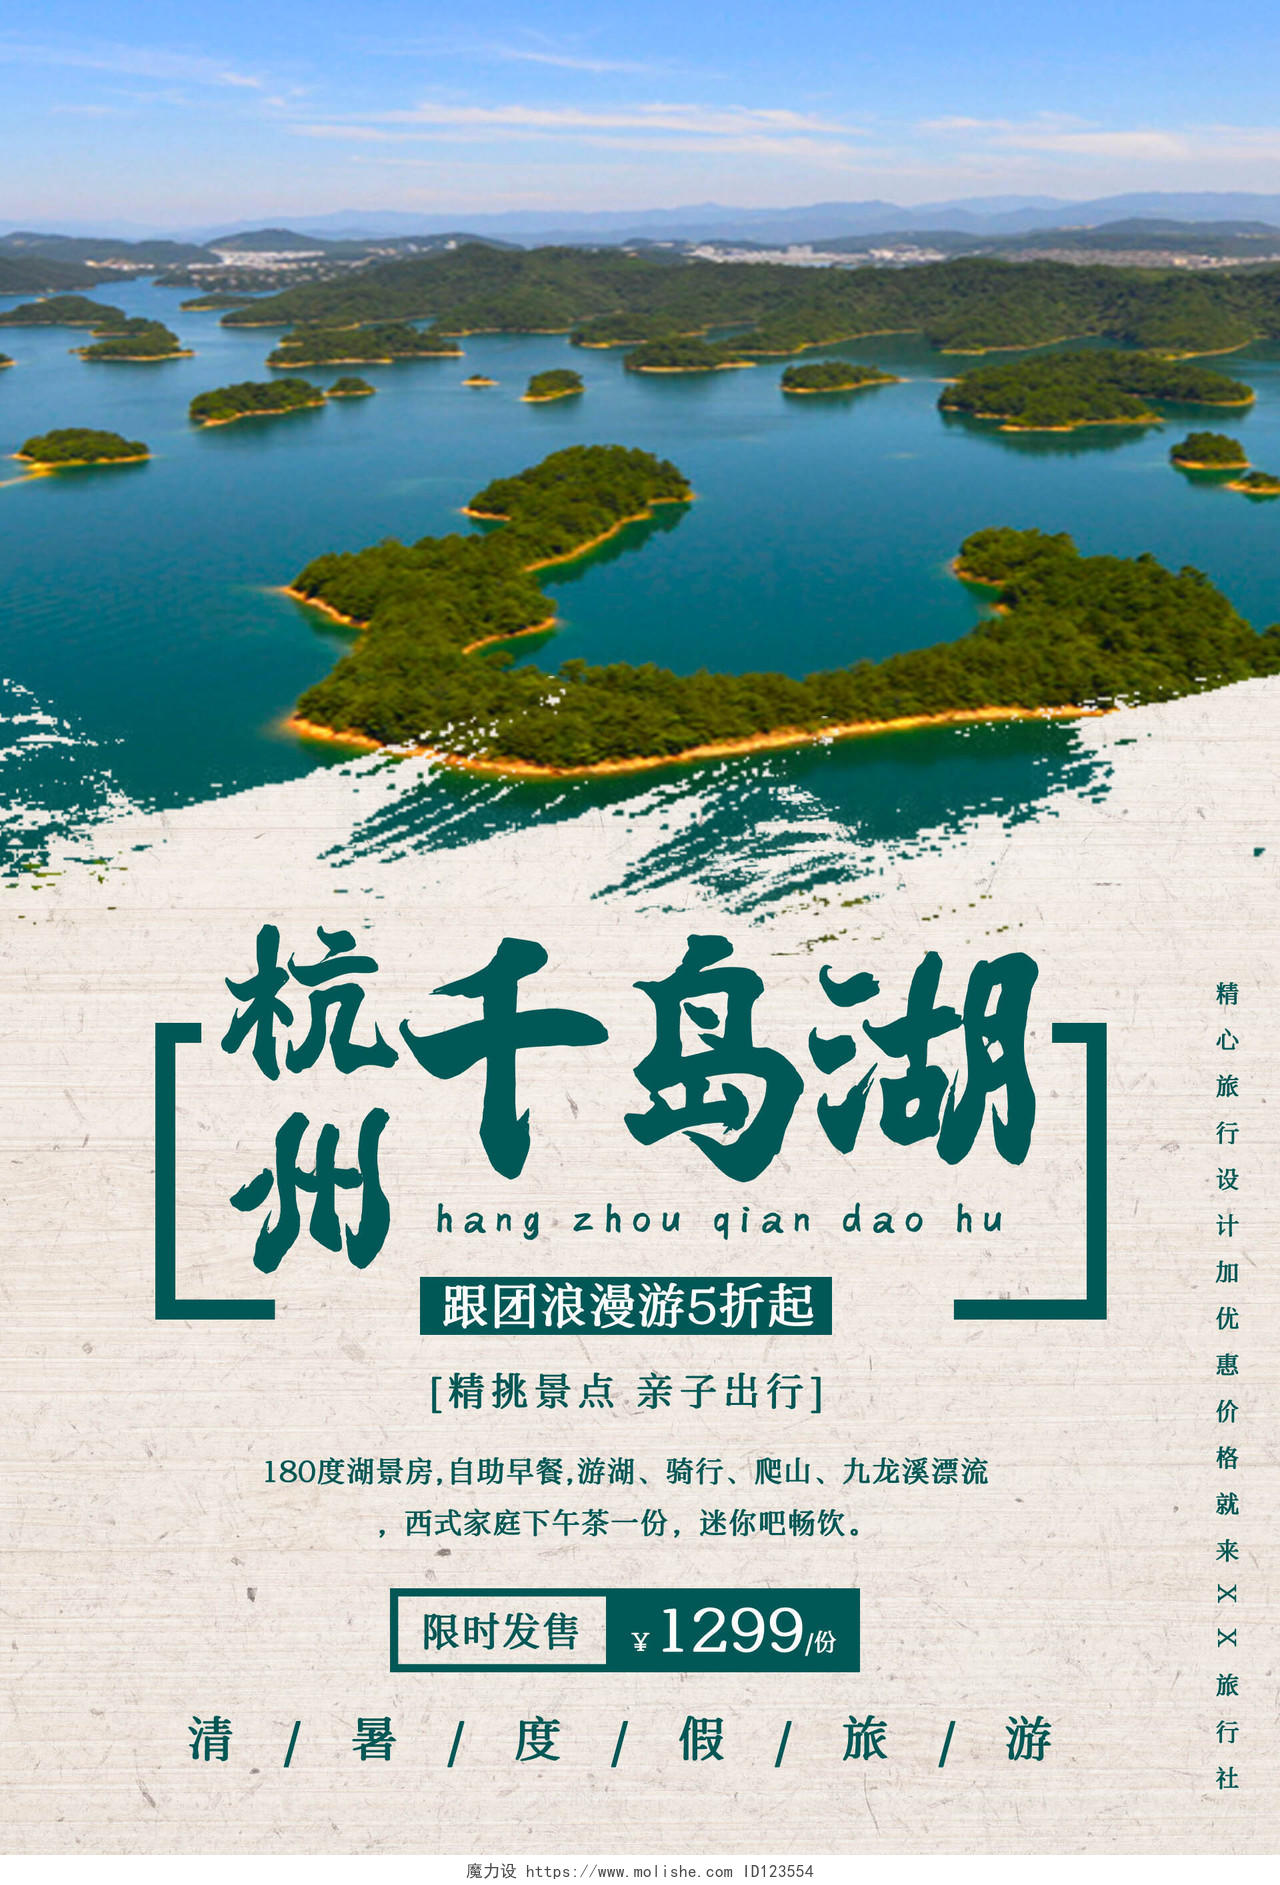 蓝色风景杭州千岛湖旅游团购海报模板